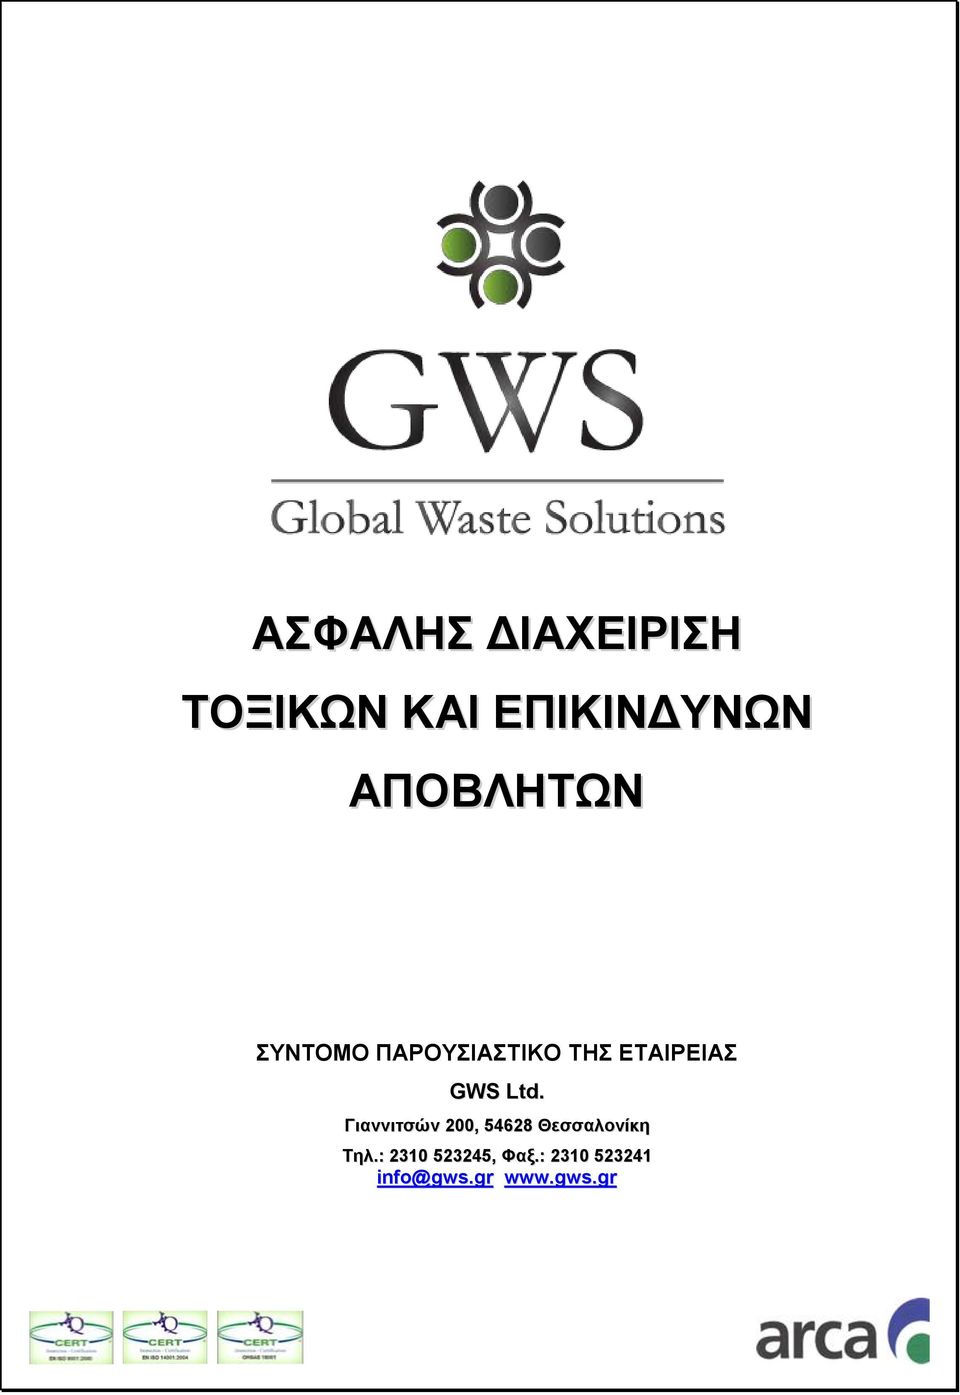 GWS Ltd. Γιαννιτσών 200, 54628 Θεσσαλονίκη Τηλ.